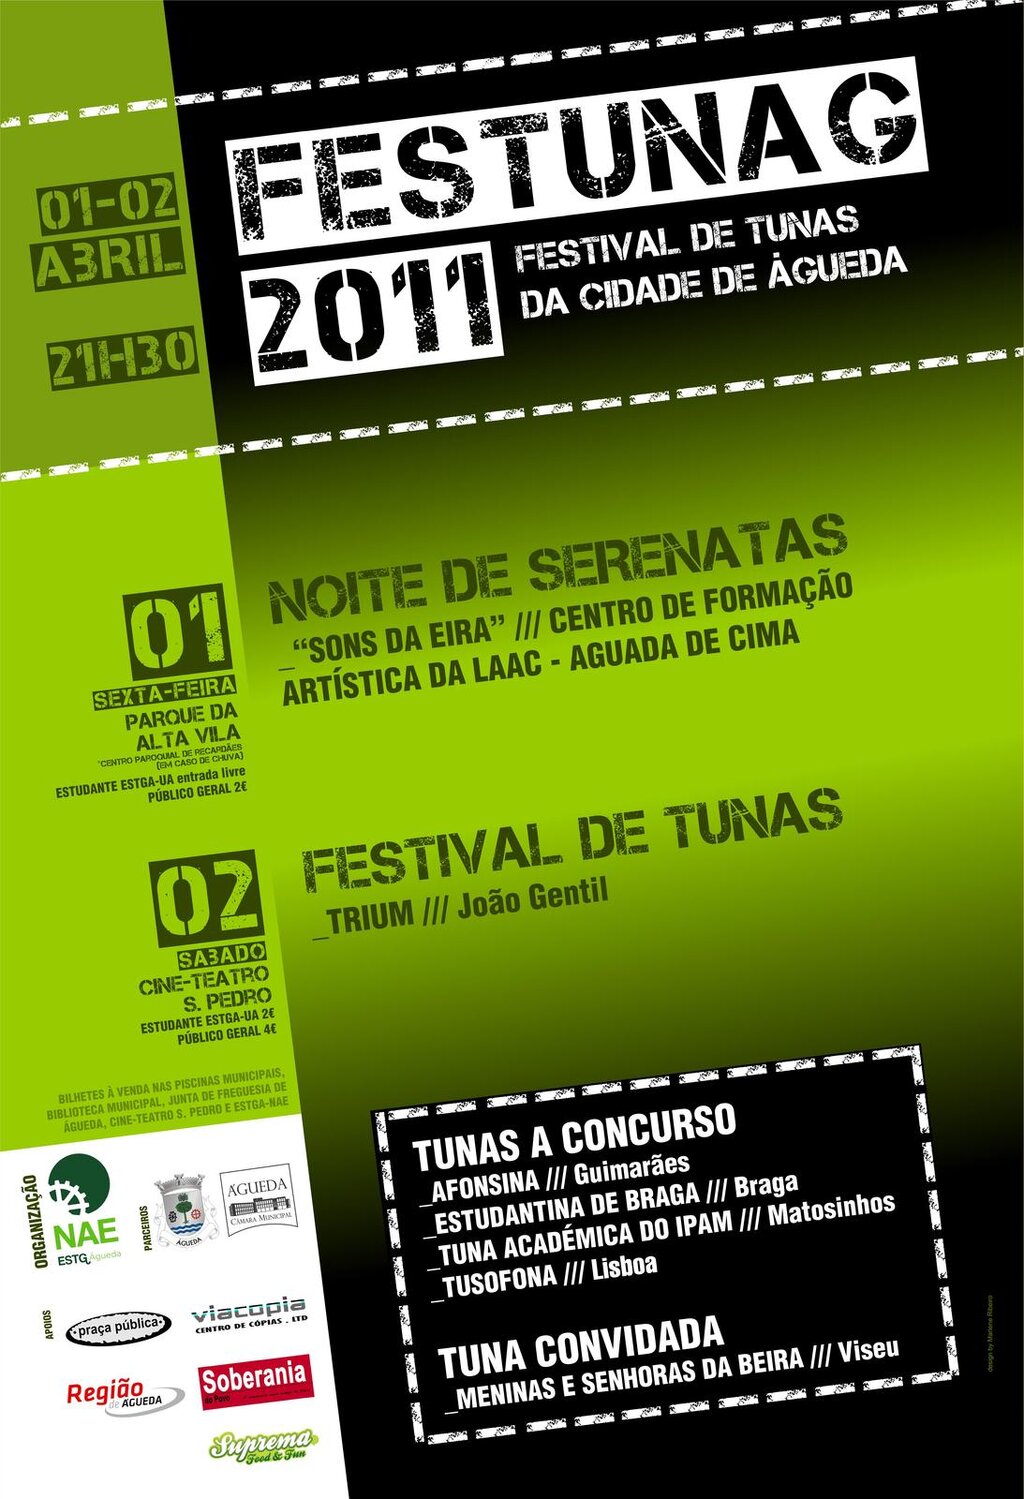 FESTUNAG 2011 - Festival de Tunas da Cidade de Águeda